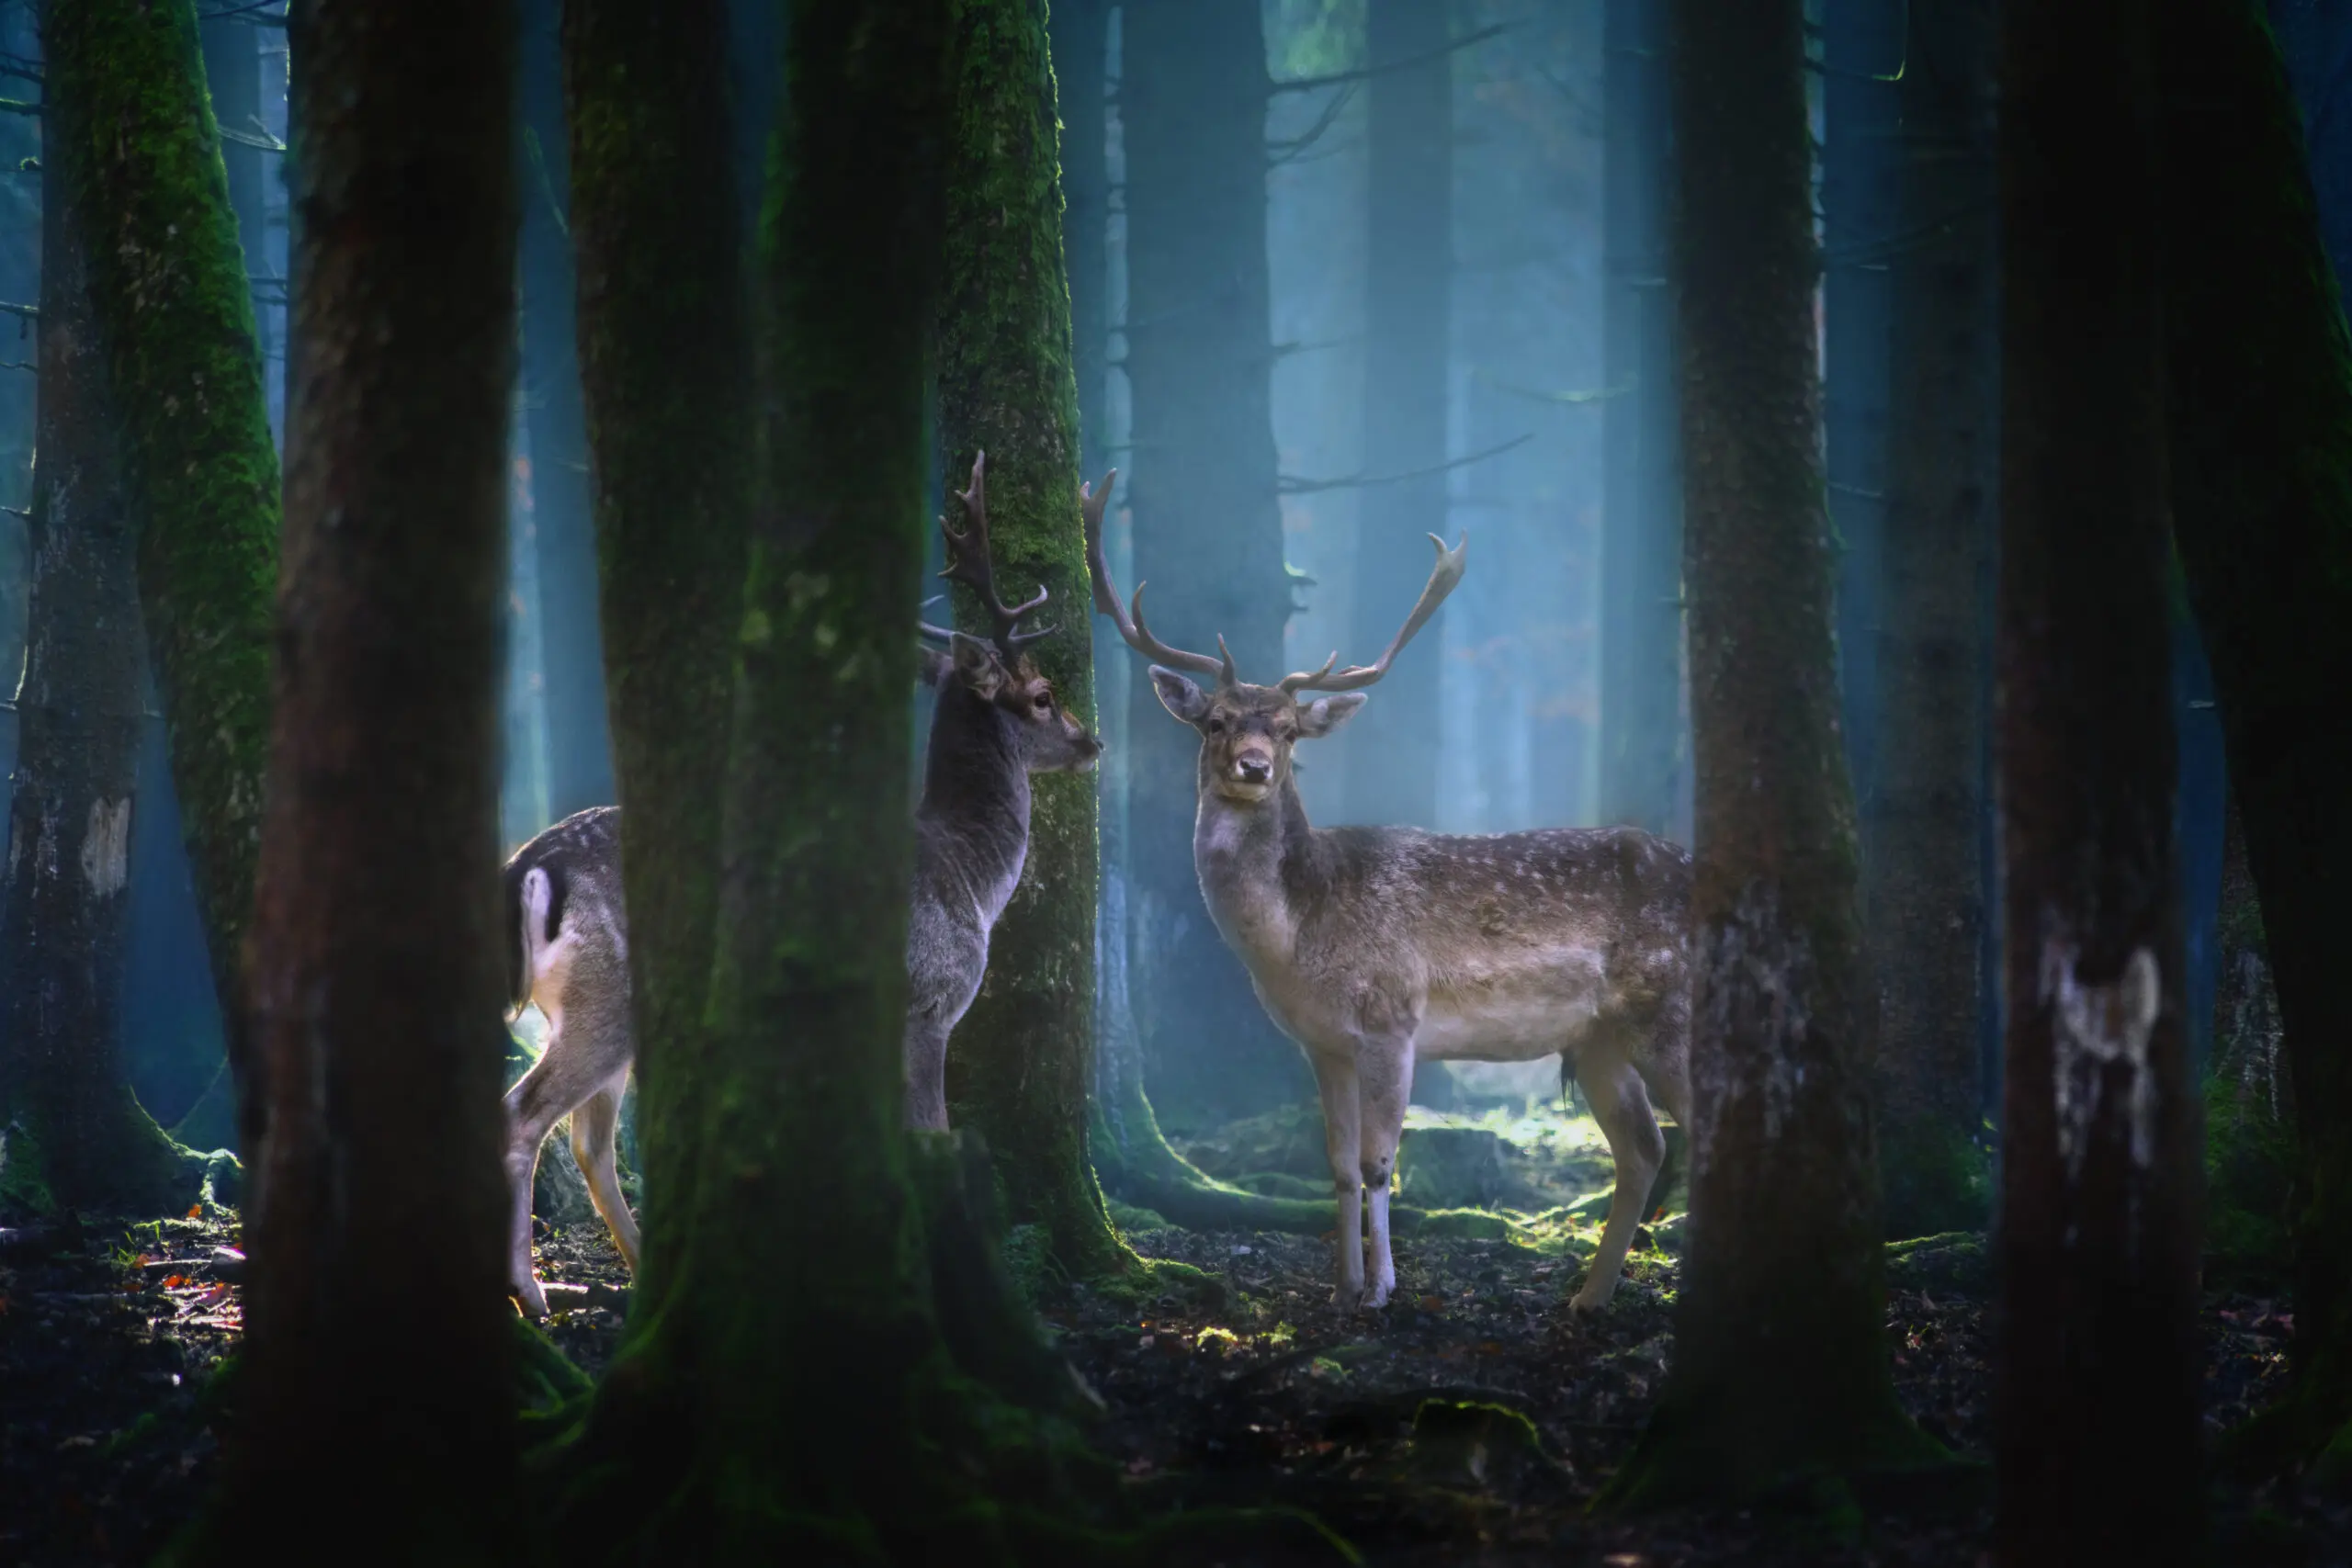 Wandbild (5694) Deers by Patrick Aurednik präsentiert: Details und Strukturen,Tiere,Natur,Landschaften,Wälder,Wildtiere,Sonstige Naturdetails,Pflanzen